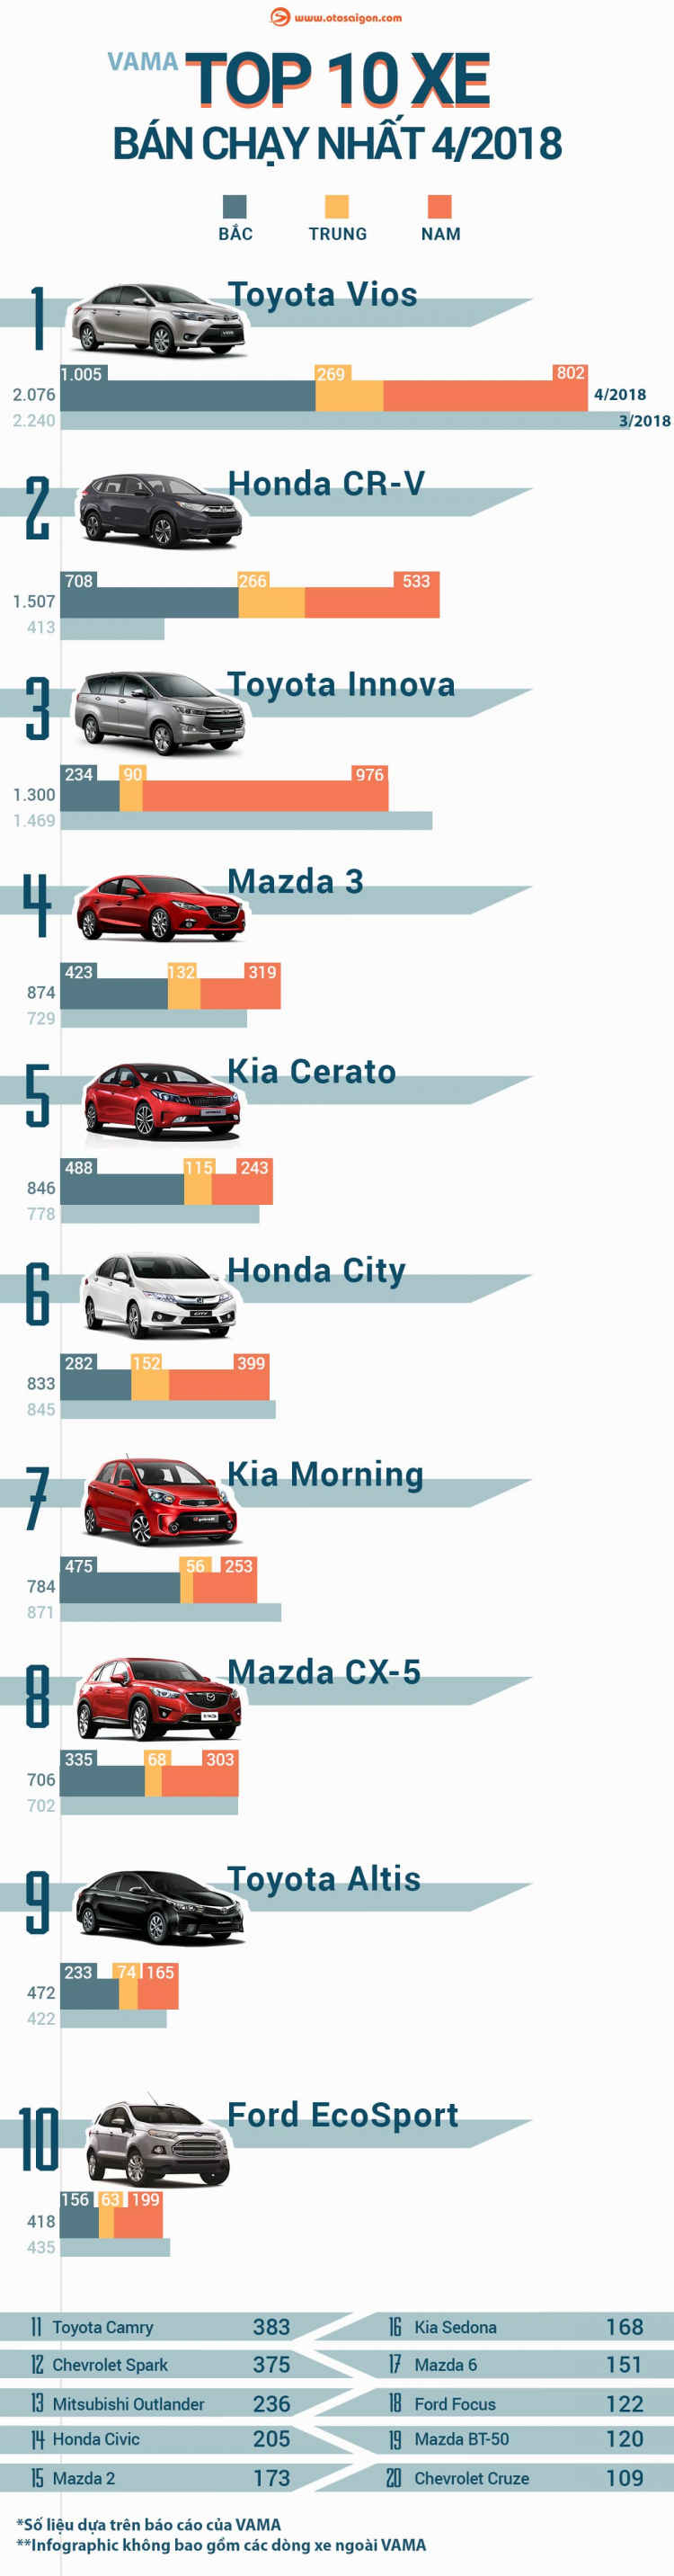 [Infographic] Top 10 xe bán chạy nhất tháng 4/2018